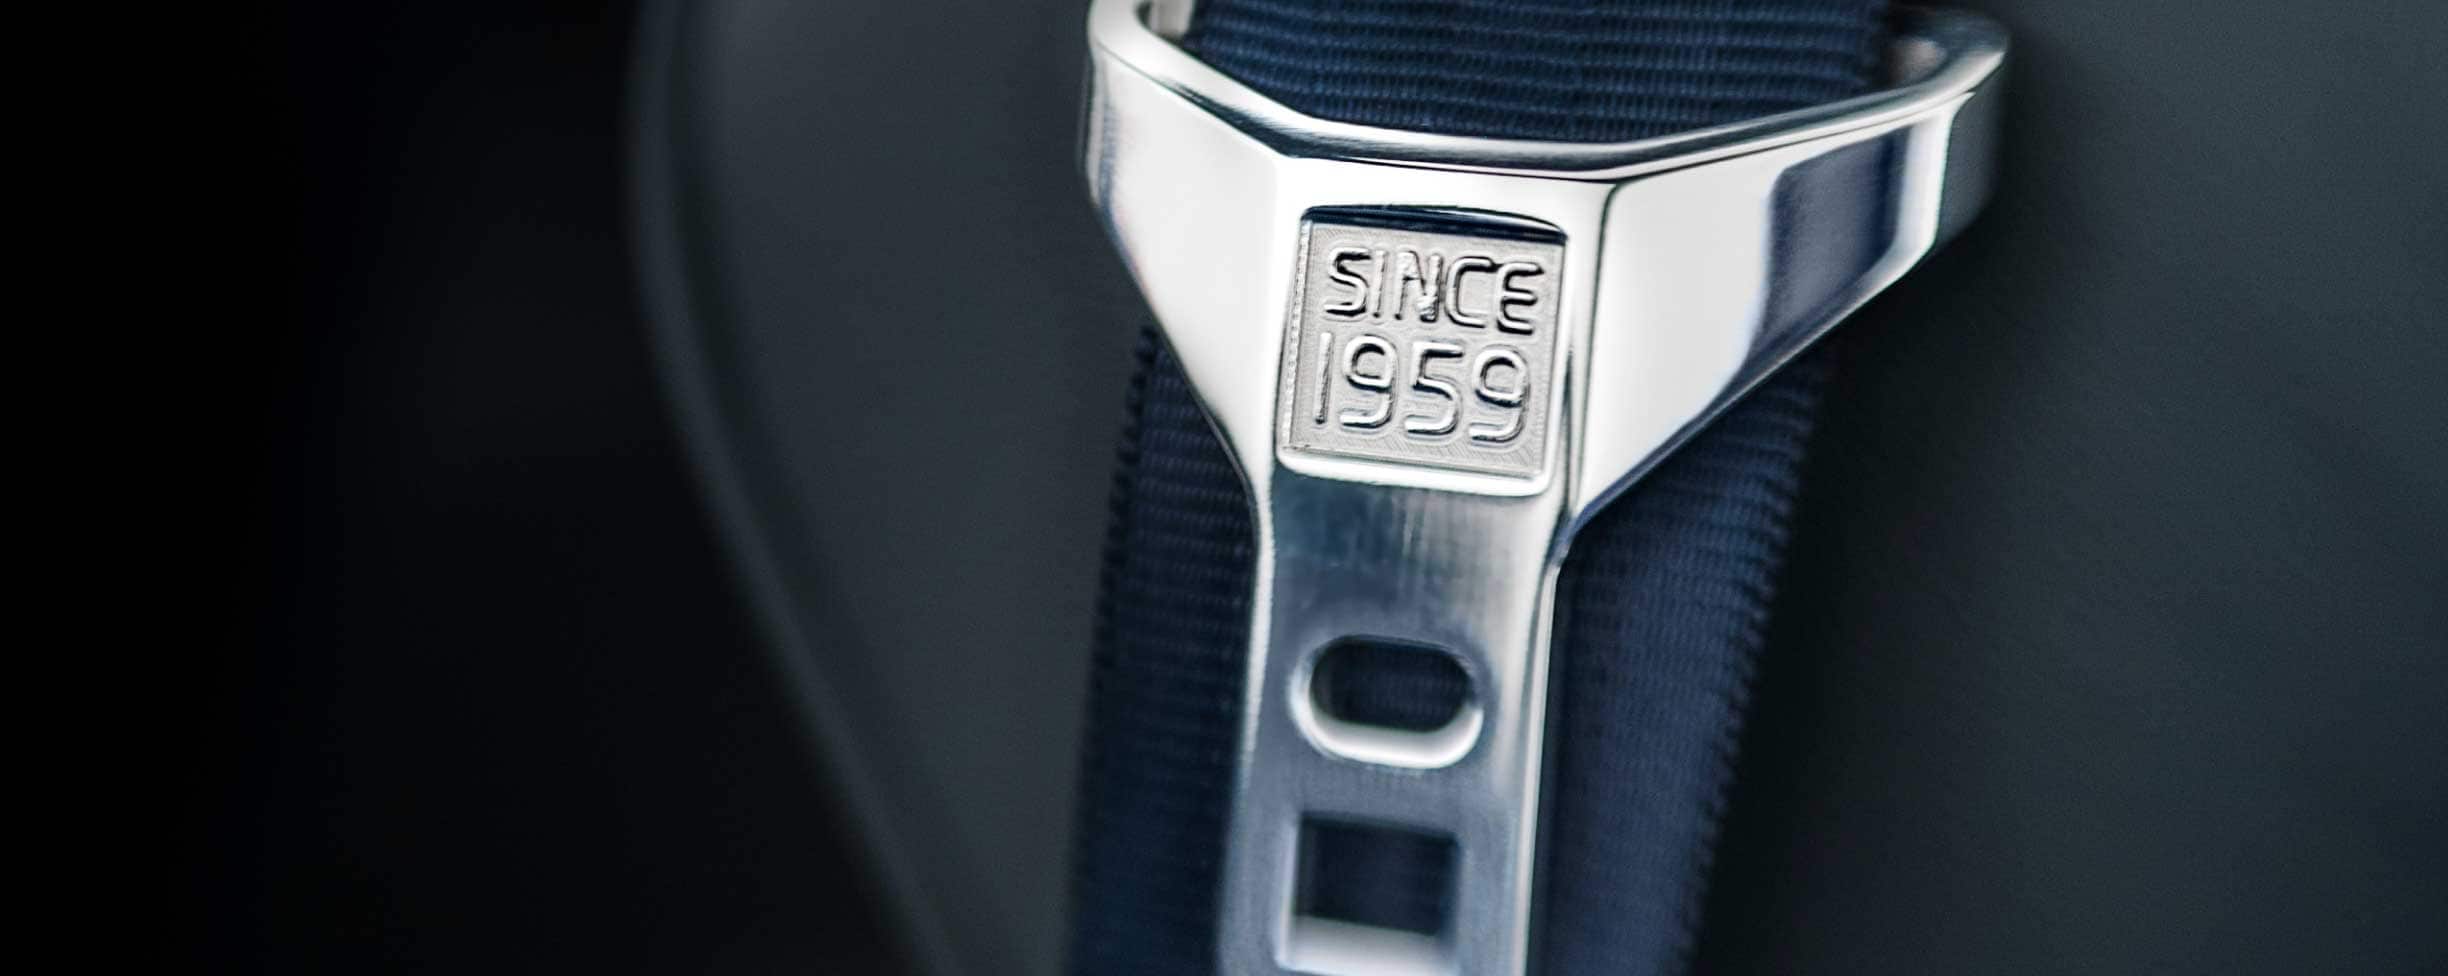 Une ceinture de sécurité grise avec le texte « Since 1959 » gravé sur la boucle.